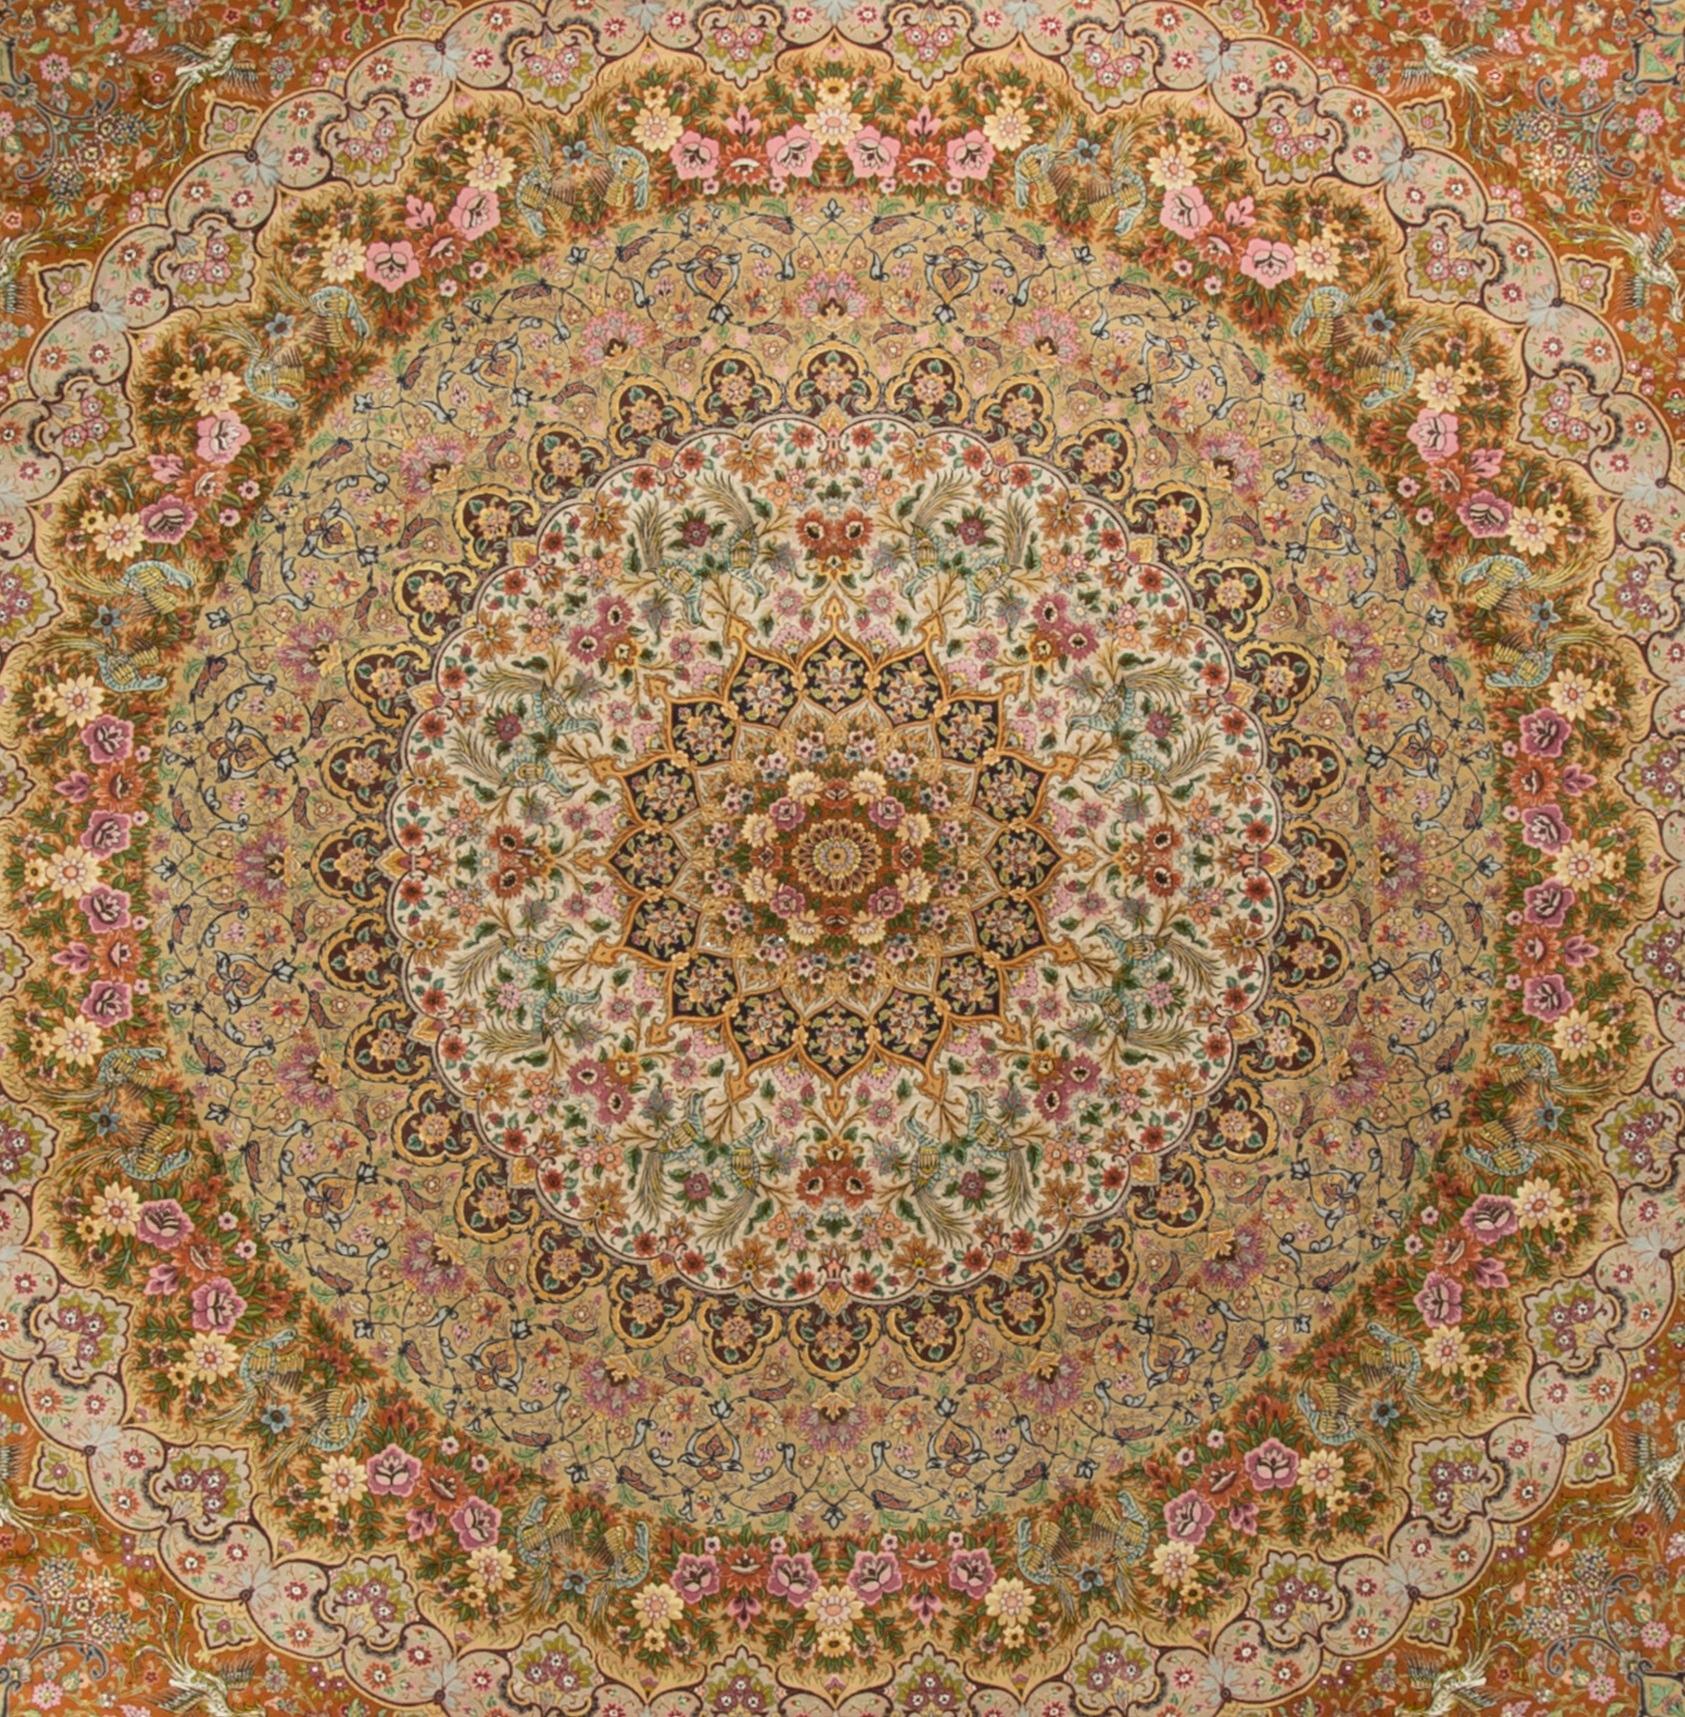 Quadratischer persischer Tabriz-Teppich im Vintage-Stil. Das Design ist der Kuppel einer Moschee nachempfunden, wenn Sie sich vorstellen können, darunter zu stehen und nach oben zu schauen, um diese spektakuläre Szene zu sehen. Das zentrale